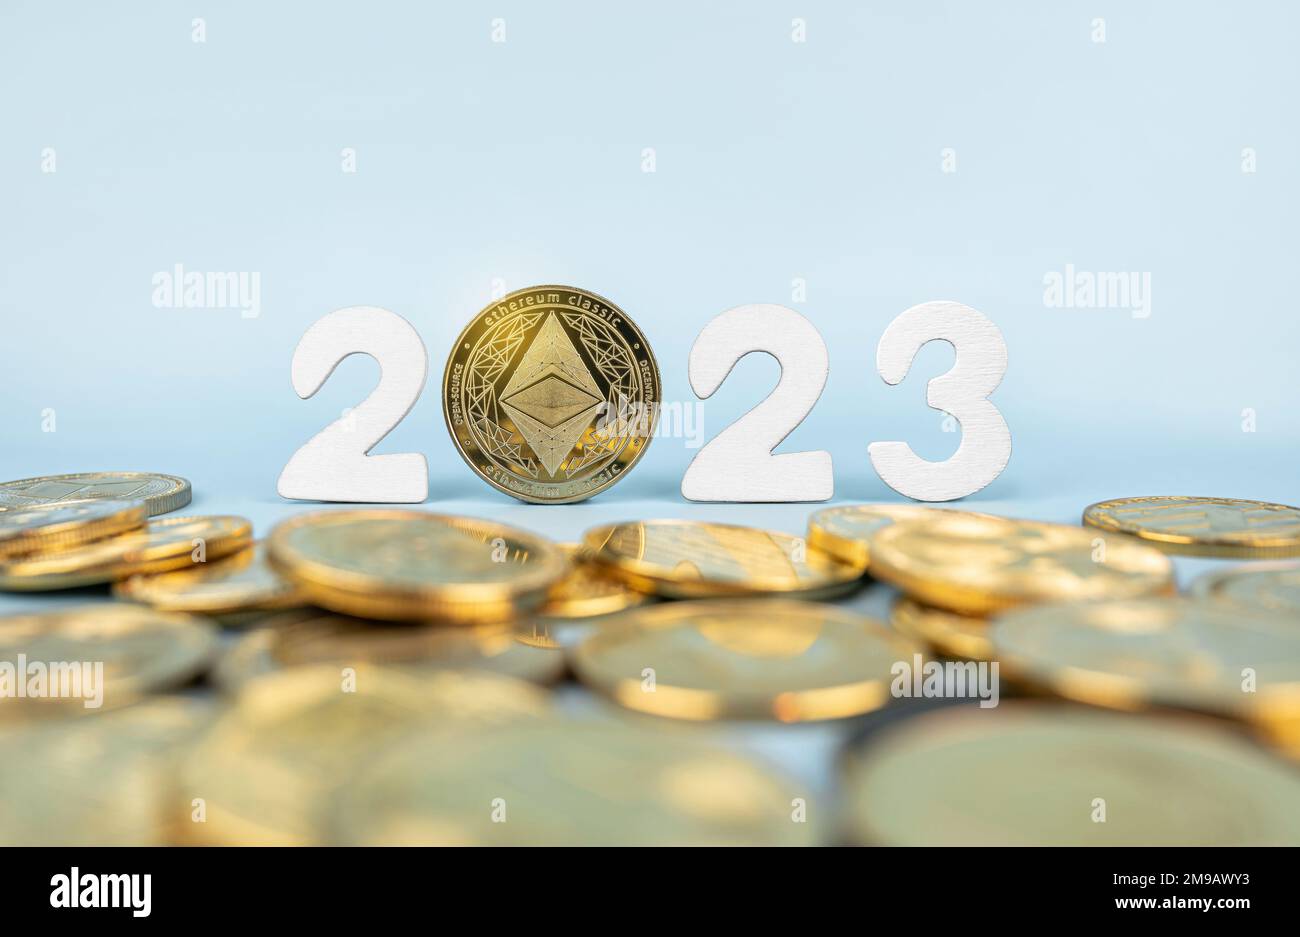 Concept de prévision des prix Ethereum 2023. Pièce d'éther située à côté des jetons de crypto-monnaie et des numéros d'année sur fond bleu. Gros plan, mise au point douce. Banque D'Images